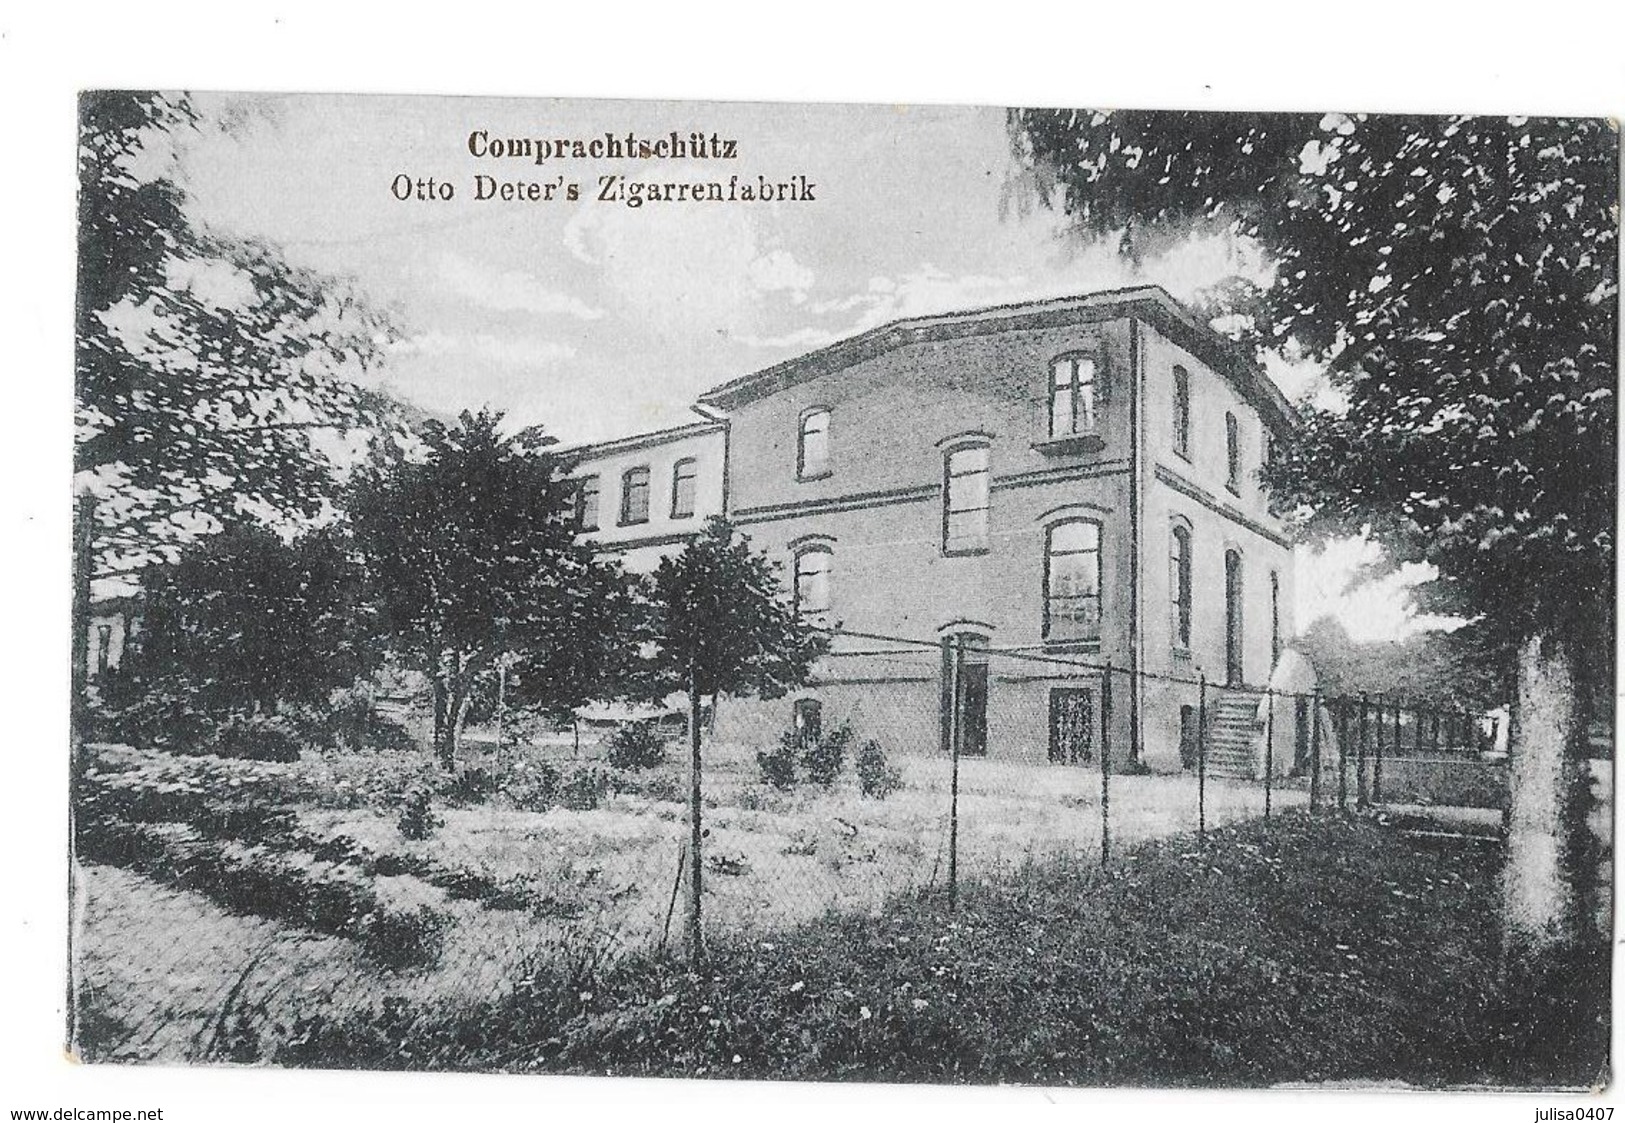 KOMPRACHCICE COMPRACHTSCHUTZ (Pologne) Otto Deter's Zigarrenfabrik - Poland